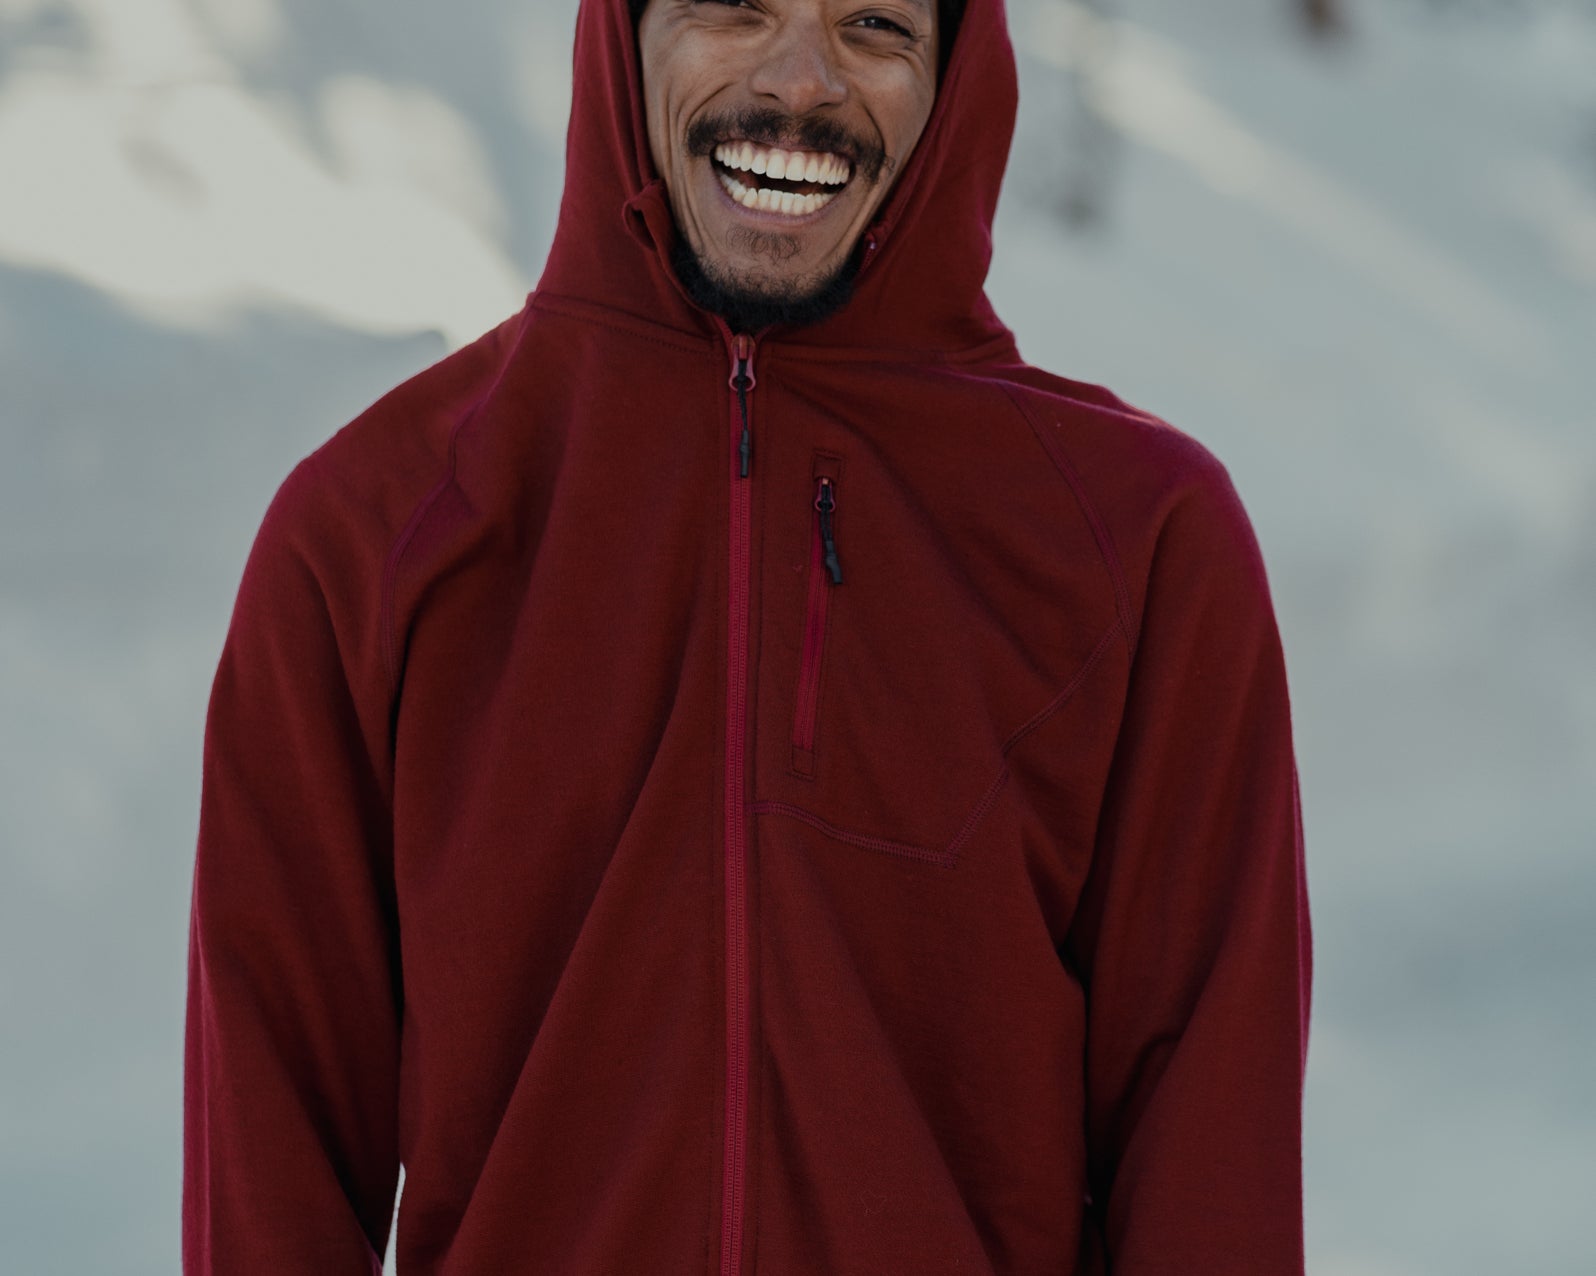 a man smiles big wearing a Ridge Merino jacket